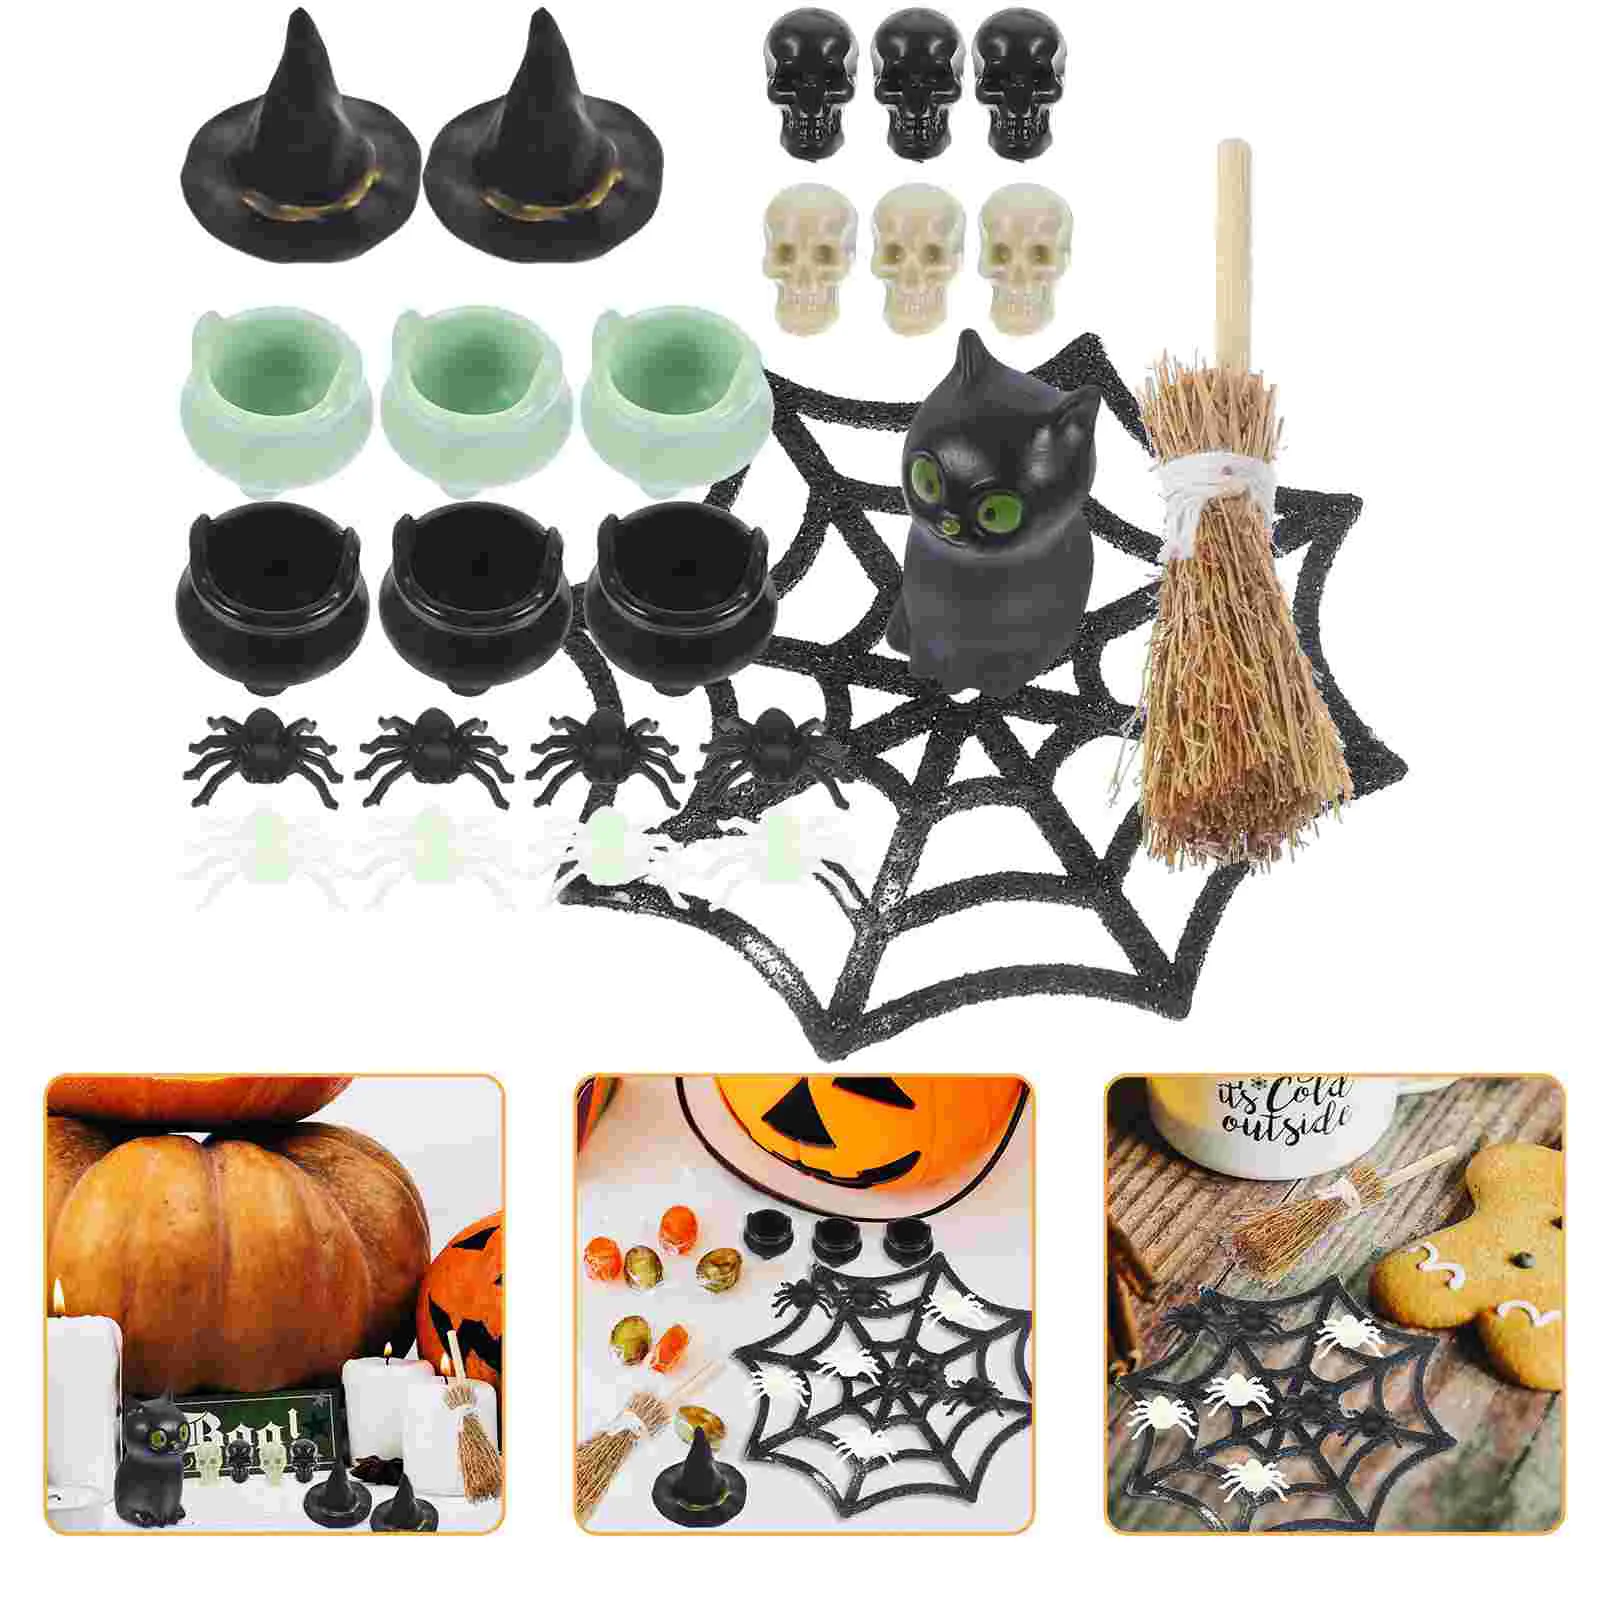 

Домашние украшения для Хэллоуина миниатюры для рукоделия, аксессуар для дома, фотоаксессуары, банки, маленькие игрушечные черепа